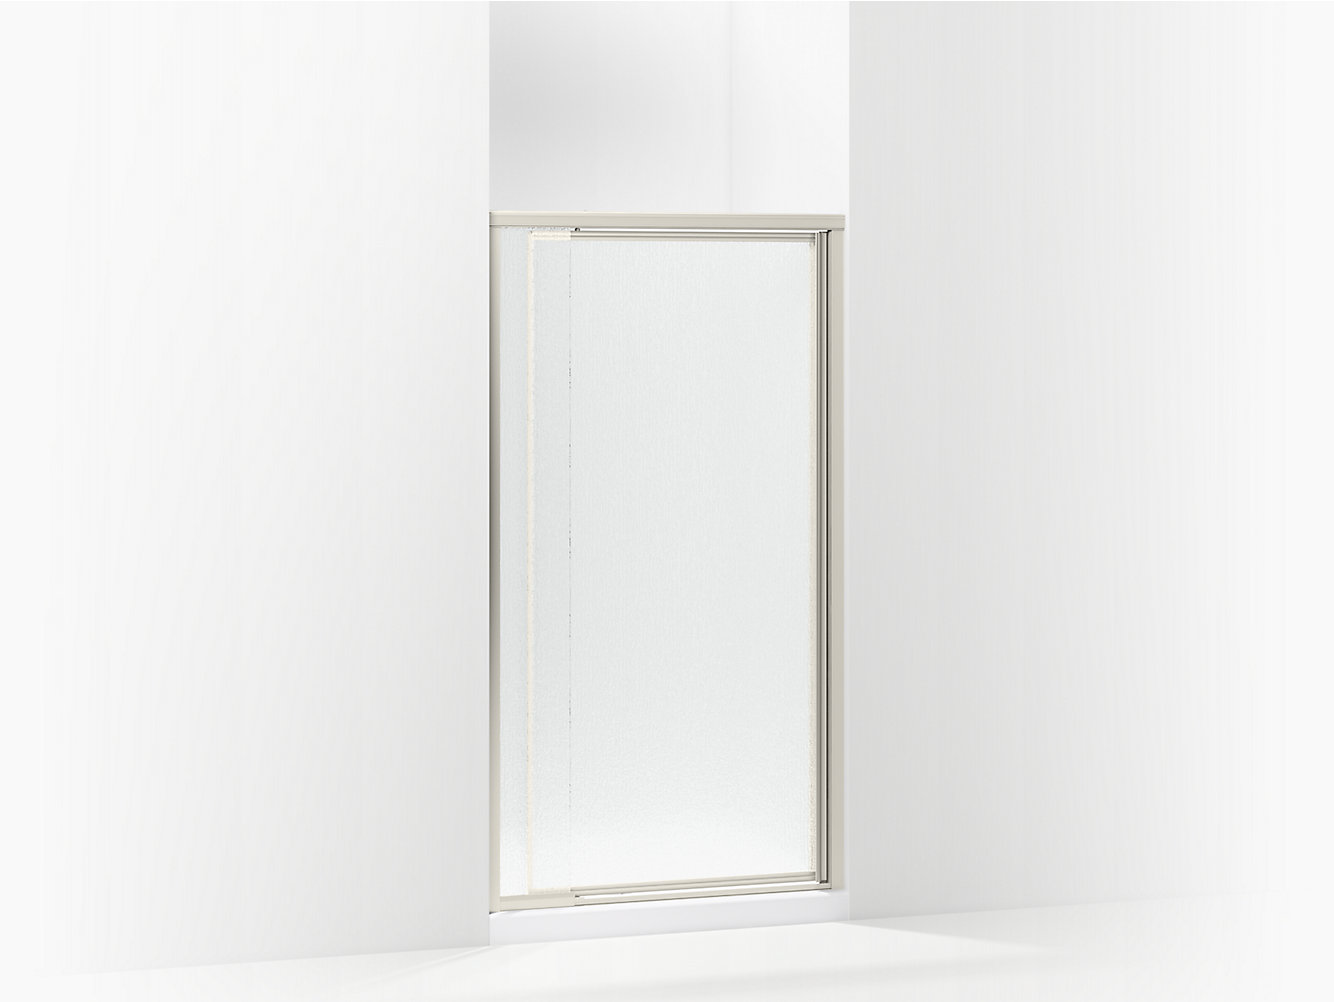 31"-36 1/2" x 72" Framed Pivot Swing Shower Doors 1/4" Clear Glass Chrome Finish 